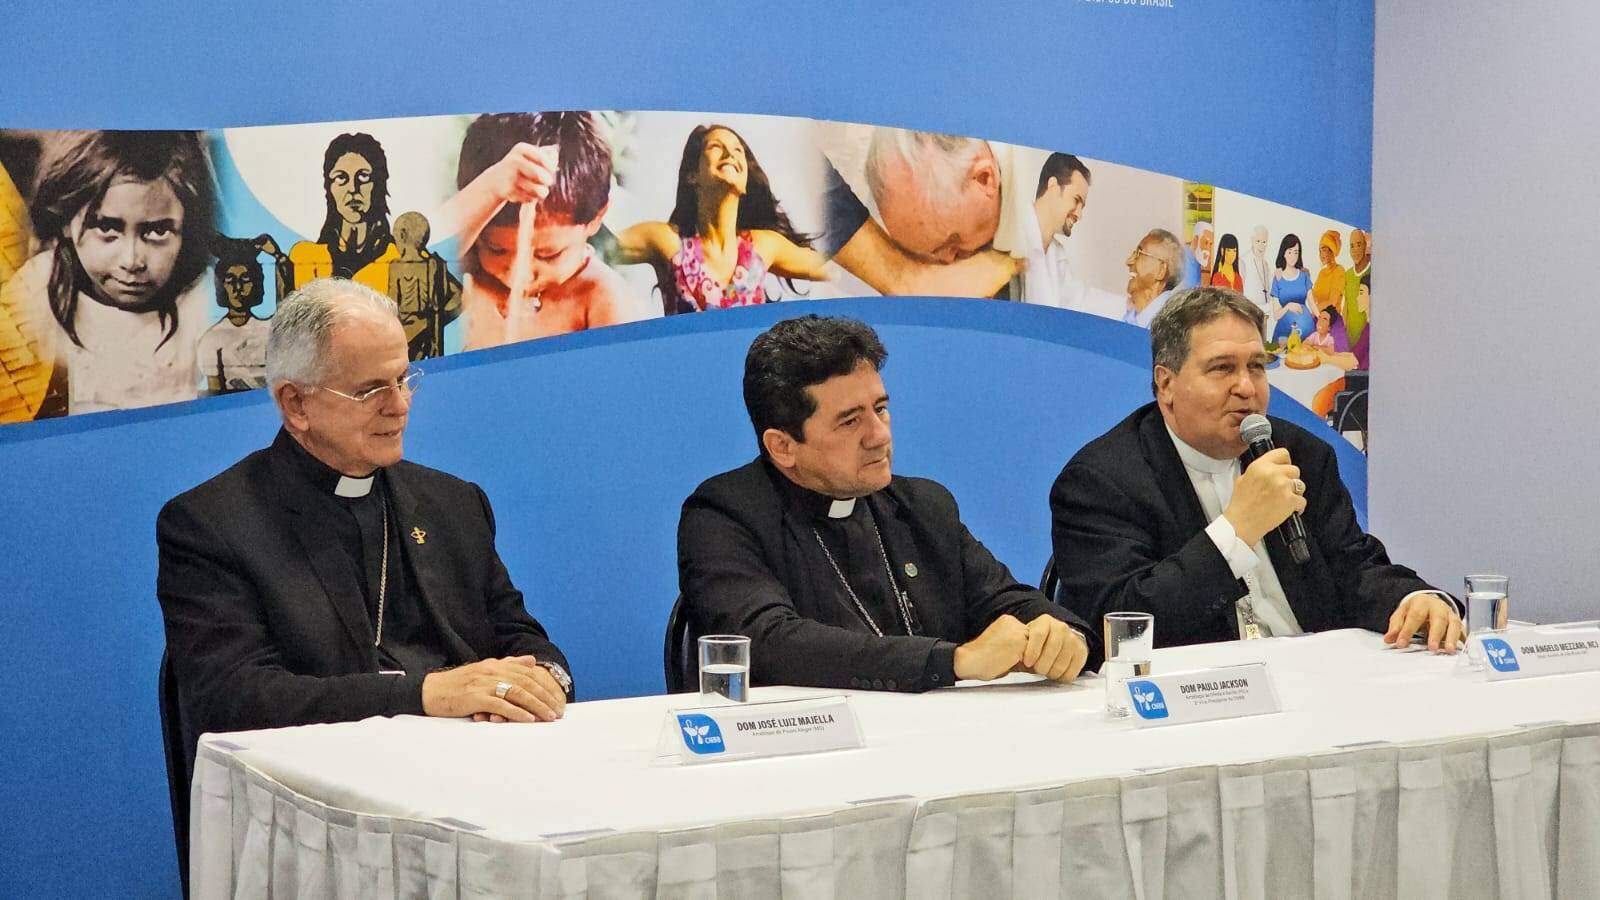 Bispos comentam causa de santos e vida religiosa em coletiva